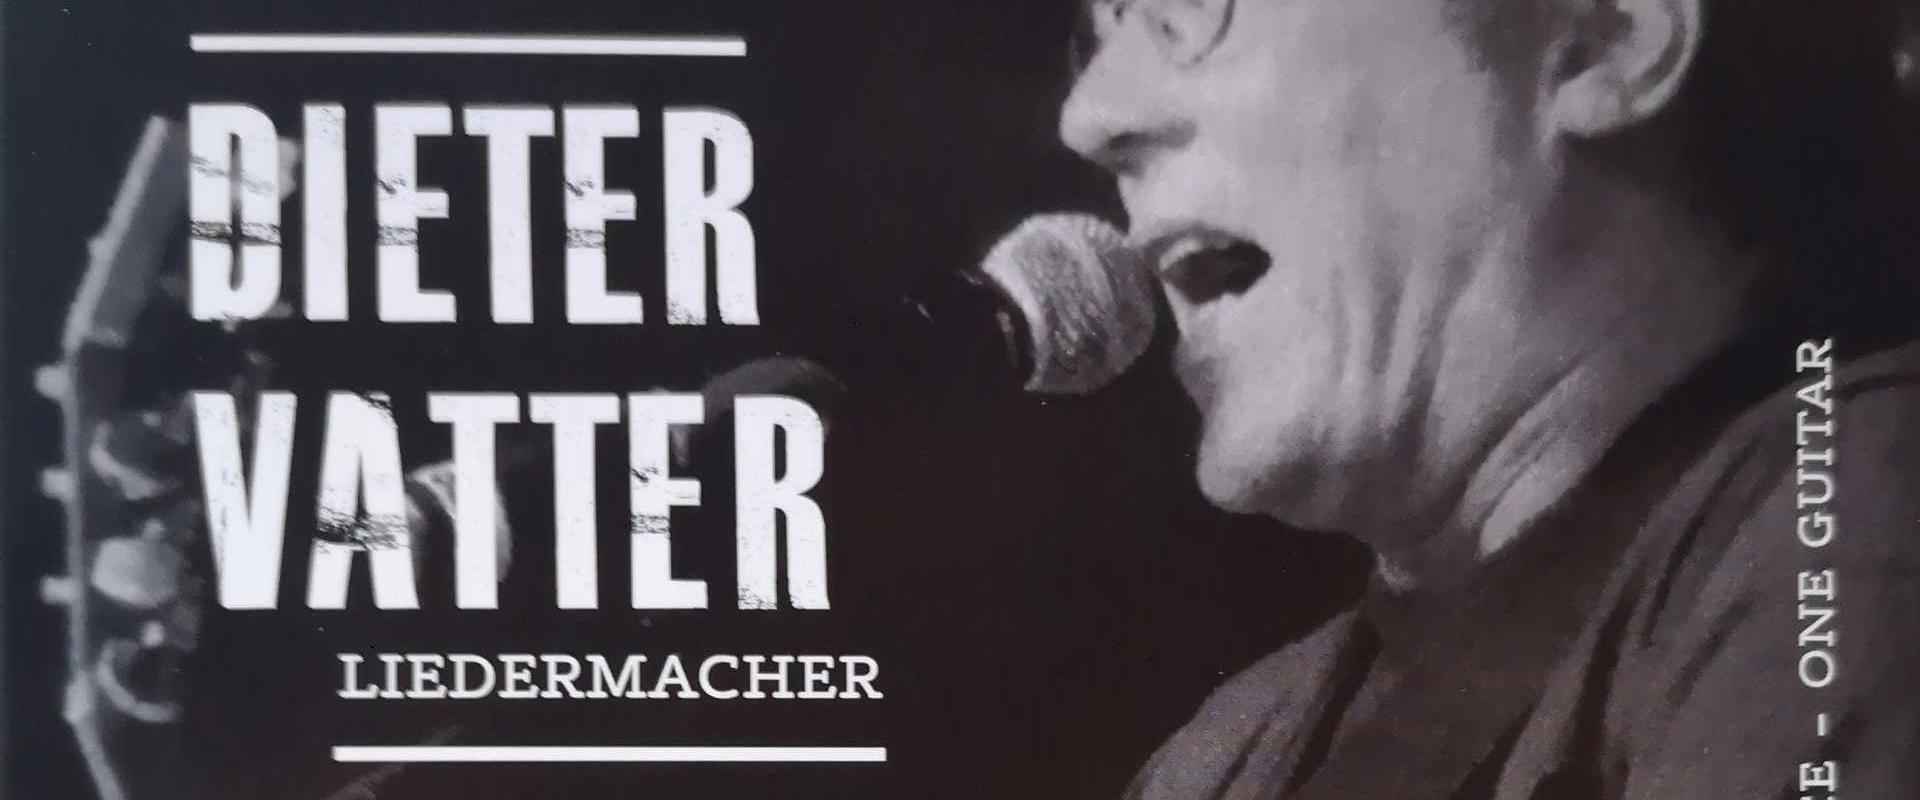 CD Neuerscheinung: Dieter Vatter - Liedermacher